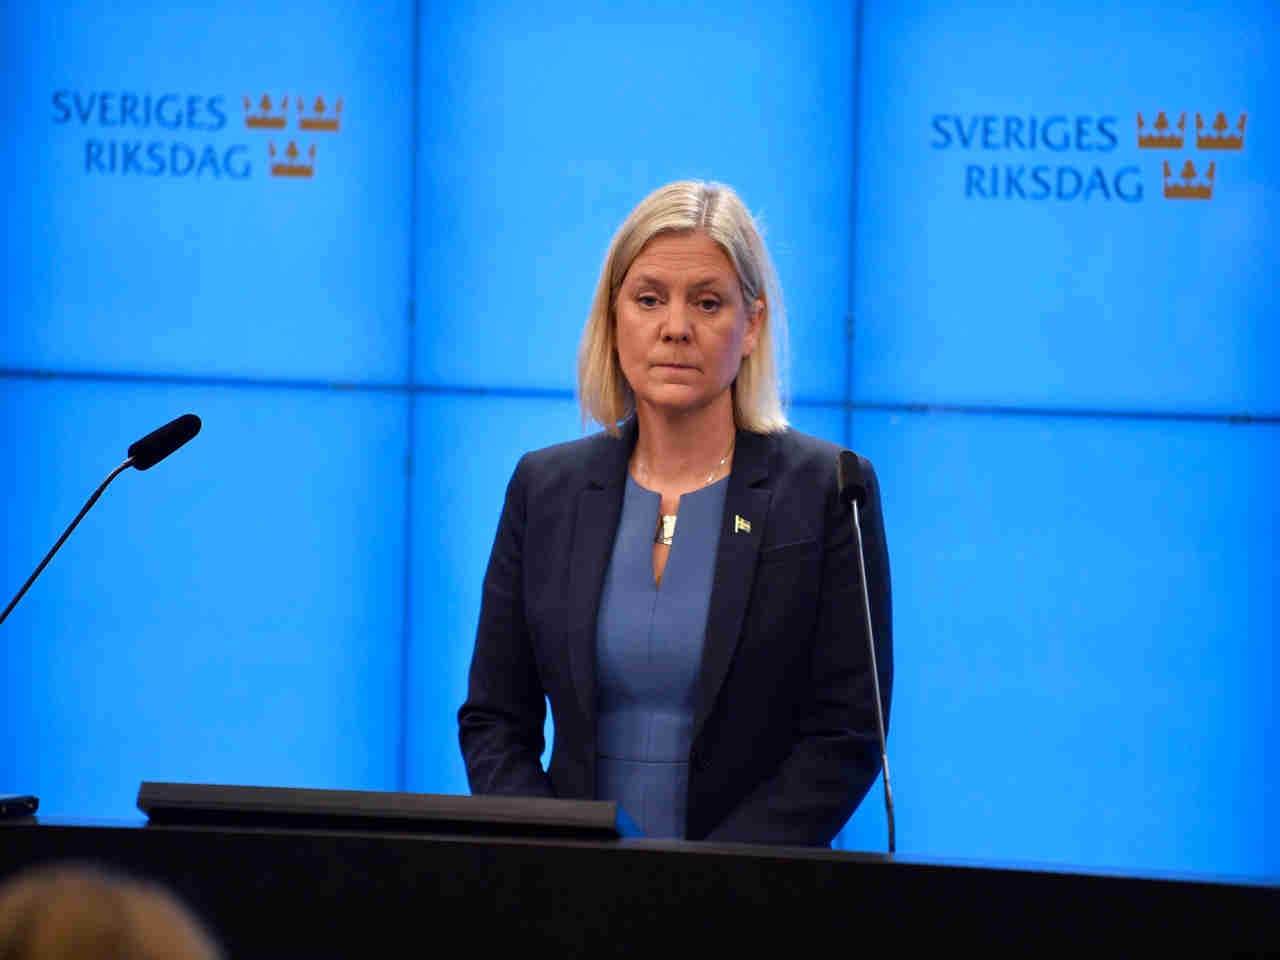 Chân dung nữ Thủ tướng đầu tiên của Thụy Điển vừa được bầu đã vội từ chức - Ảnh 1.